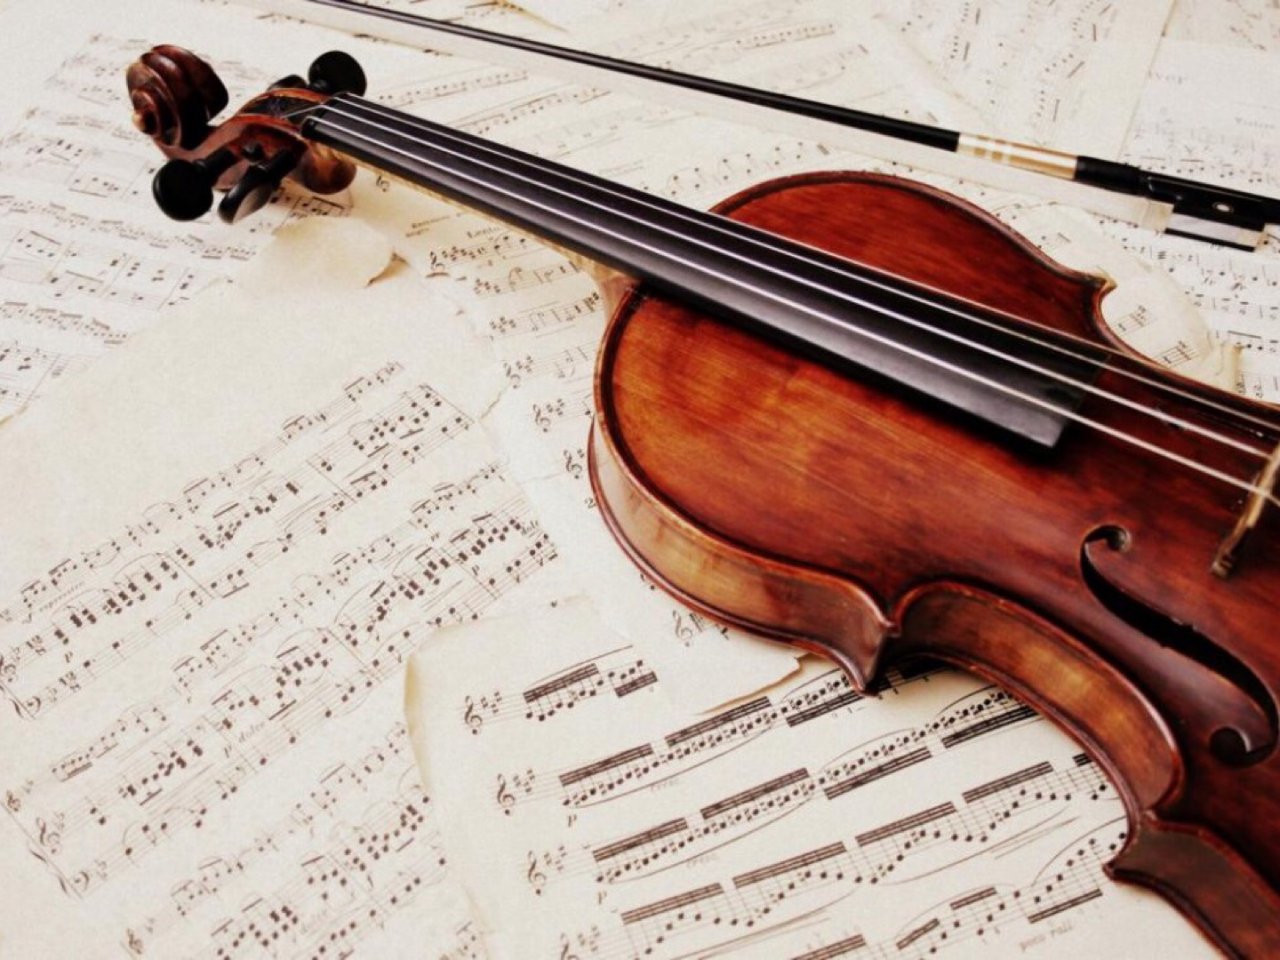 ✨小提琴🎻